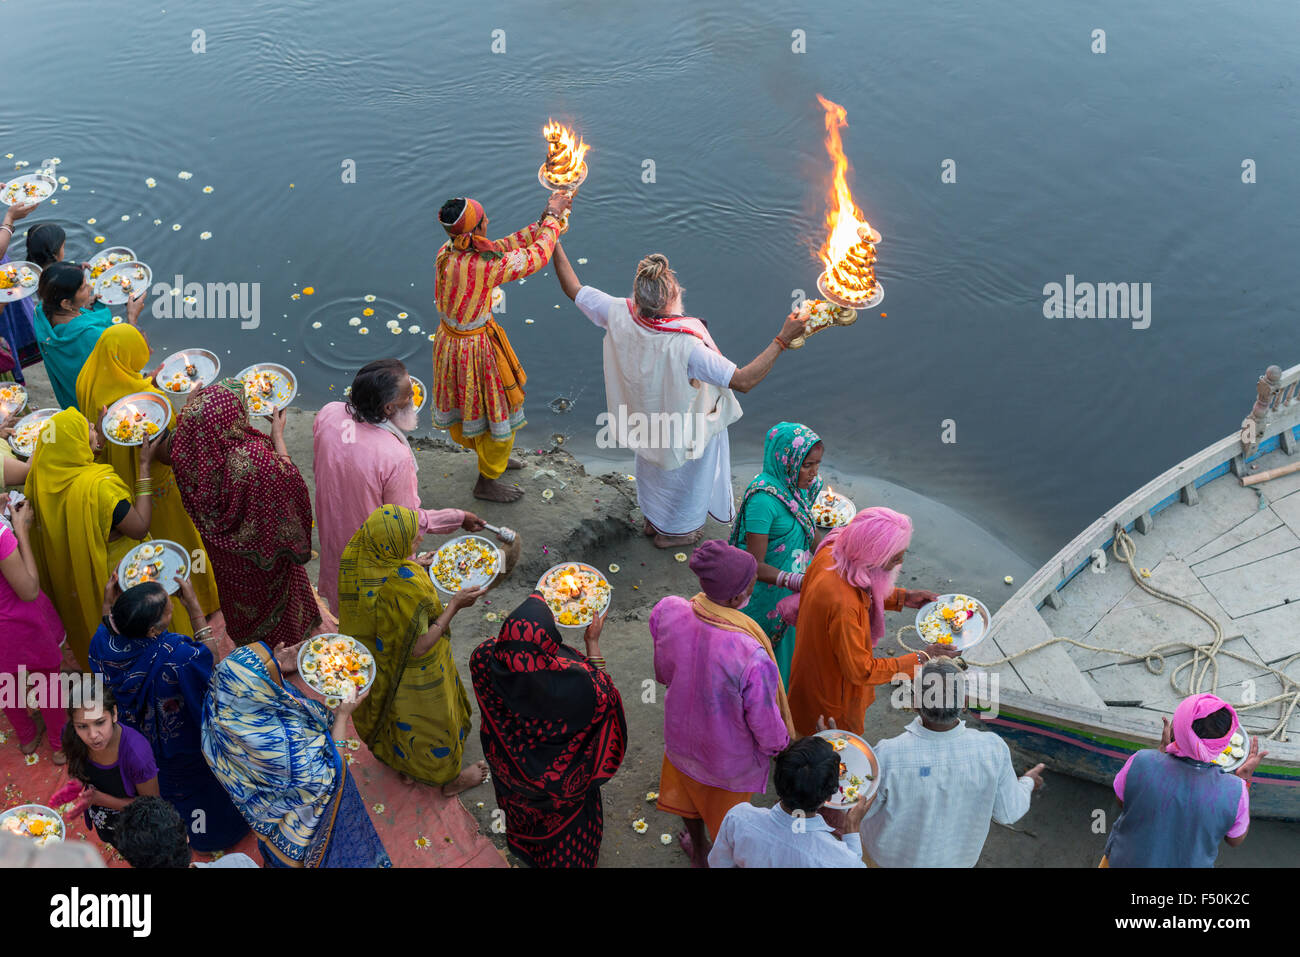 Ein Priester, der Brahmanen, und einige Pilger feiern ein Ritual, Pooja, an den ghats am heiligen Fluss Yamuna, von oben gesehen Stockfoto